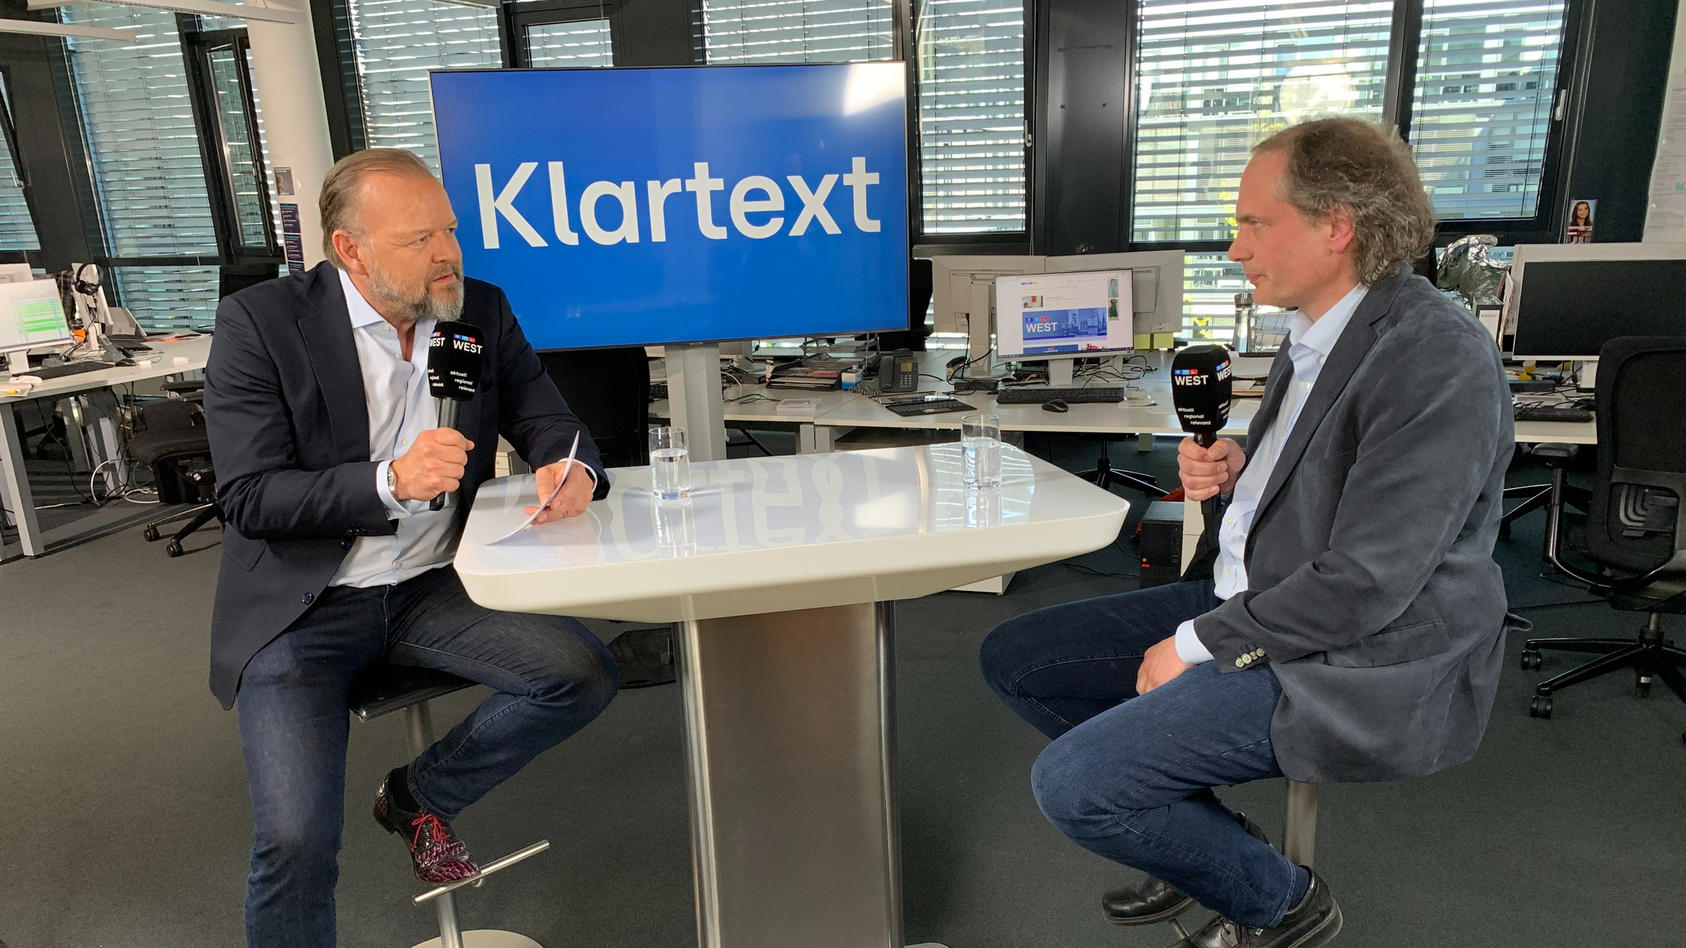 Interview mit Medienjournalist Timo Rieg RTL WEST Klartext